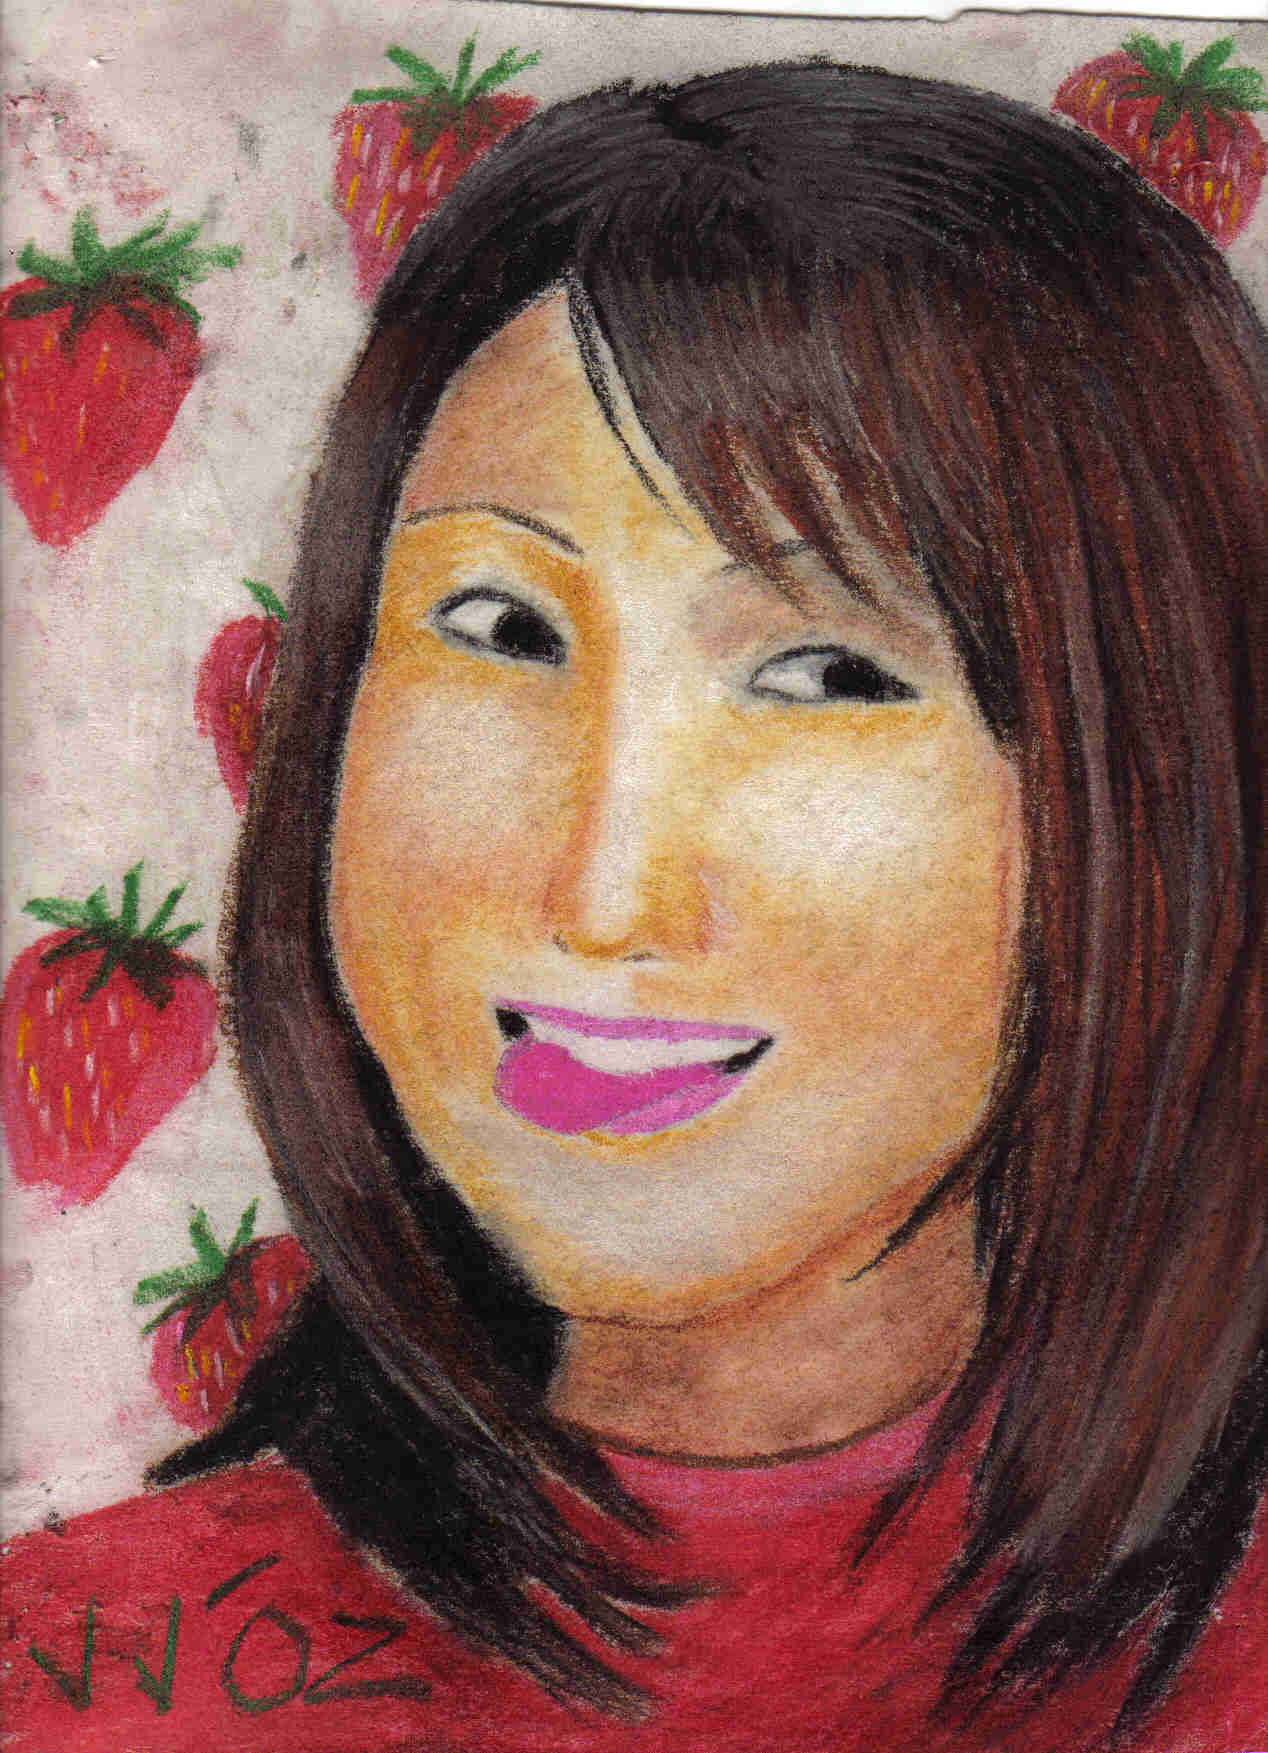 strawberri girl by soju